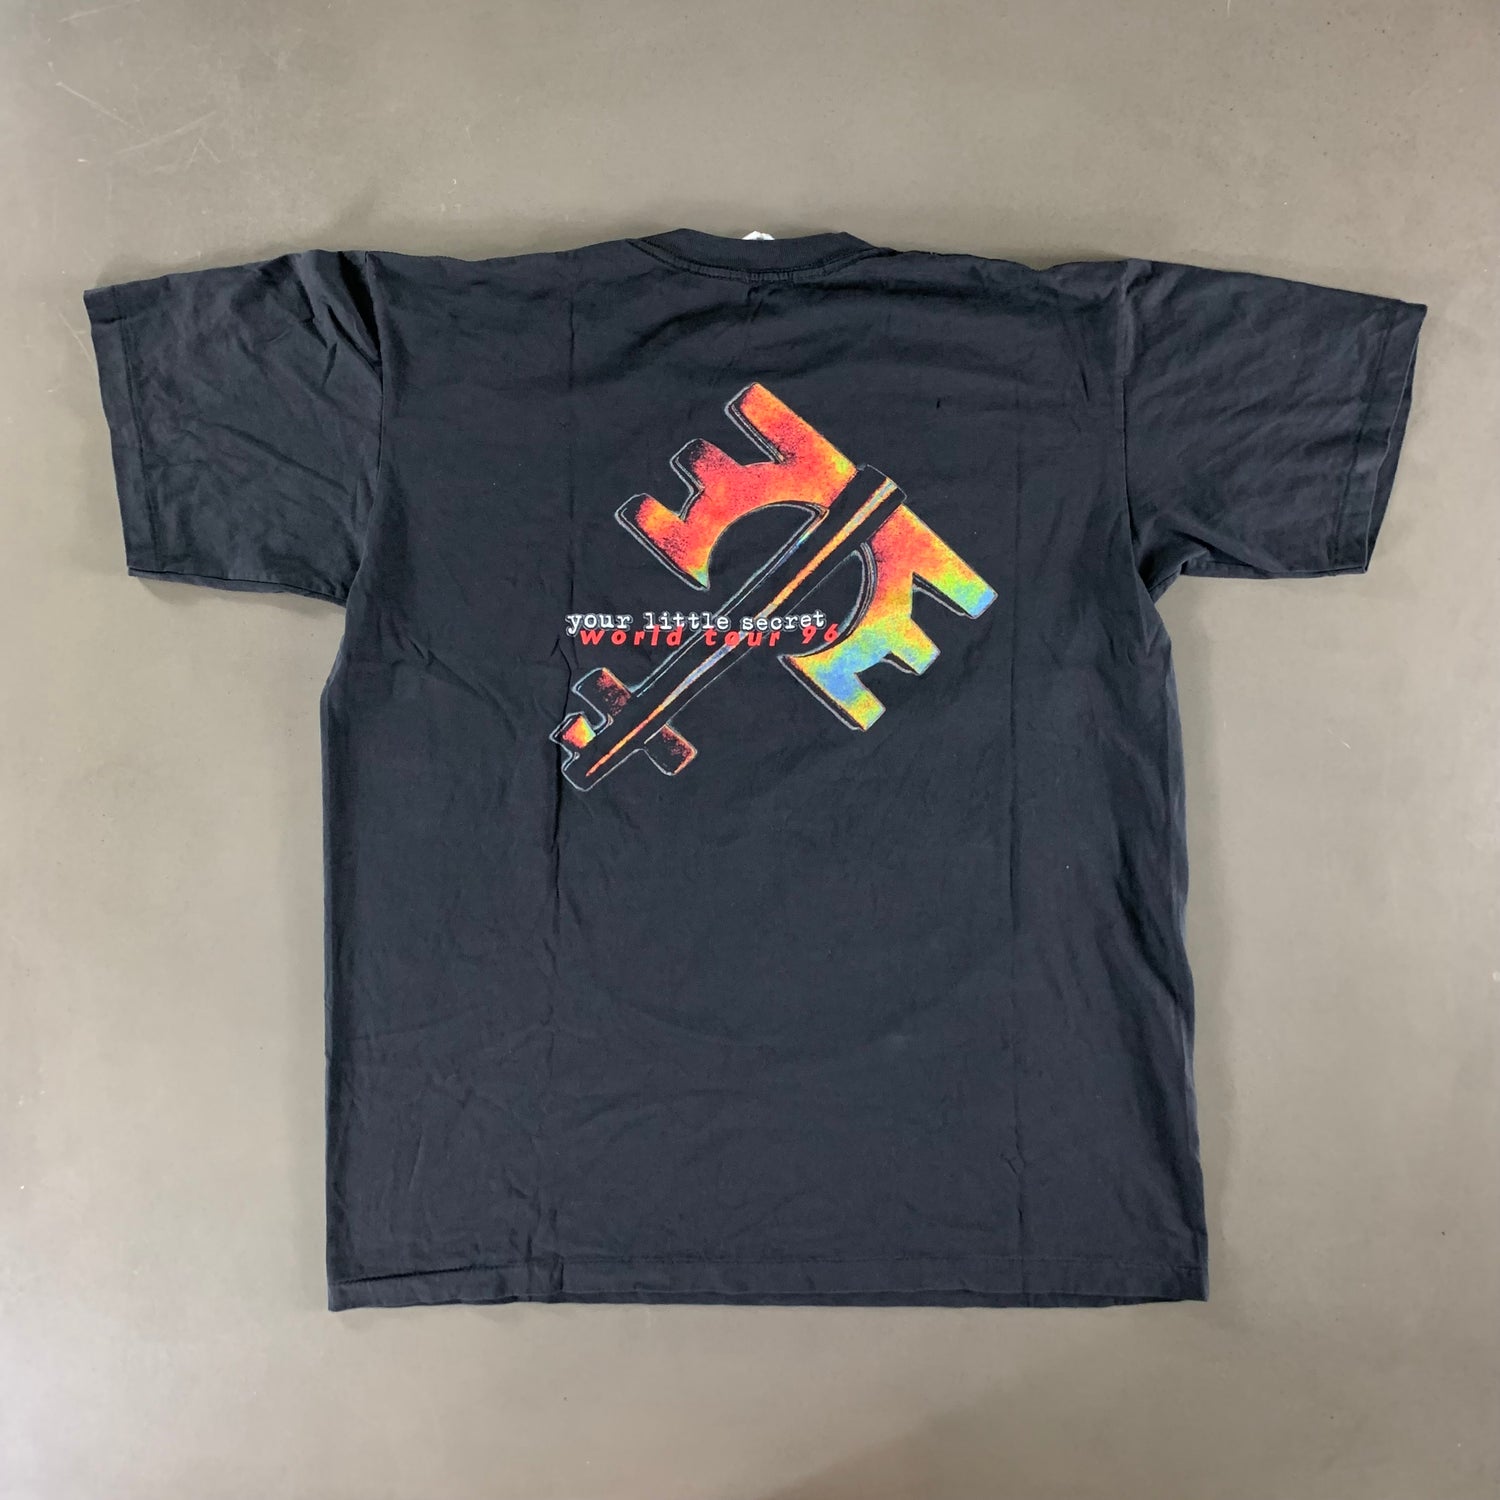 Vintage 1996 Melissa Etheridge T-shirt size XL